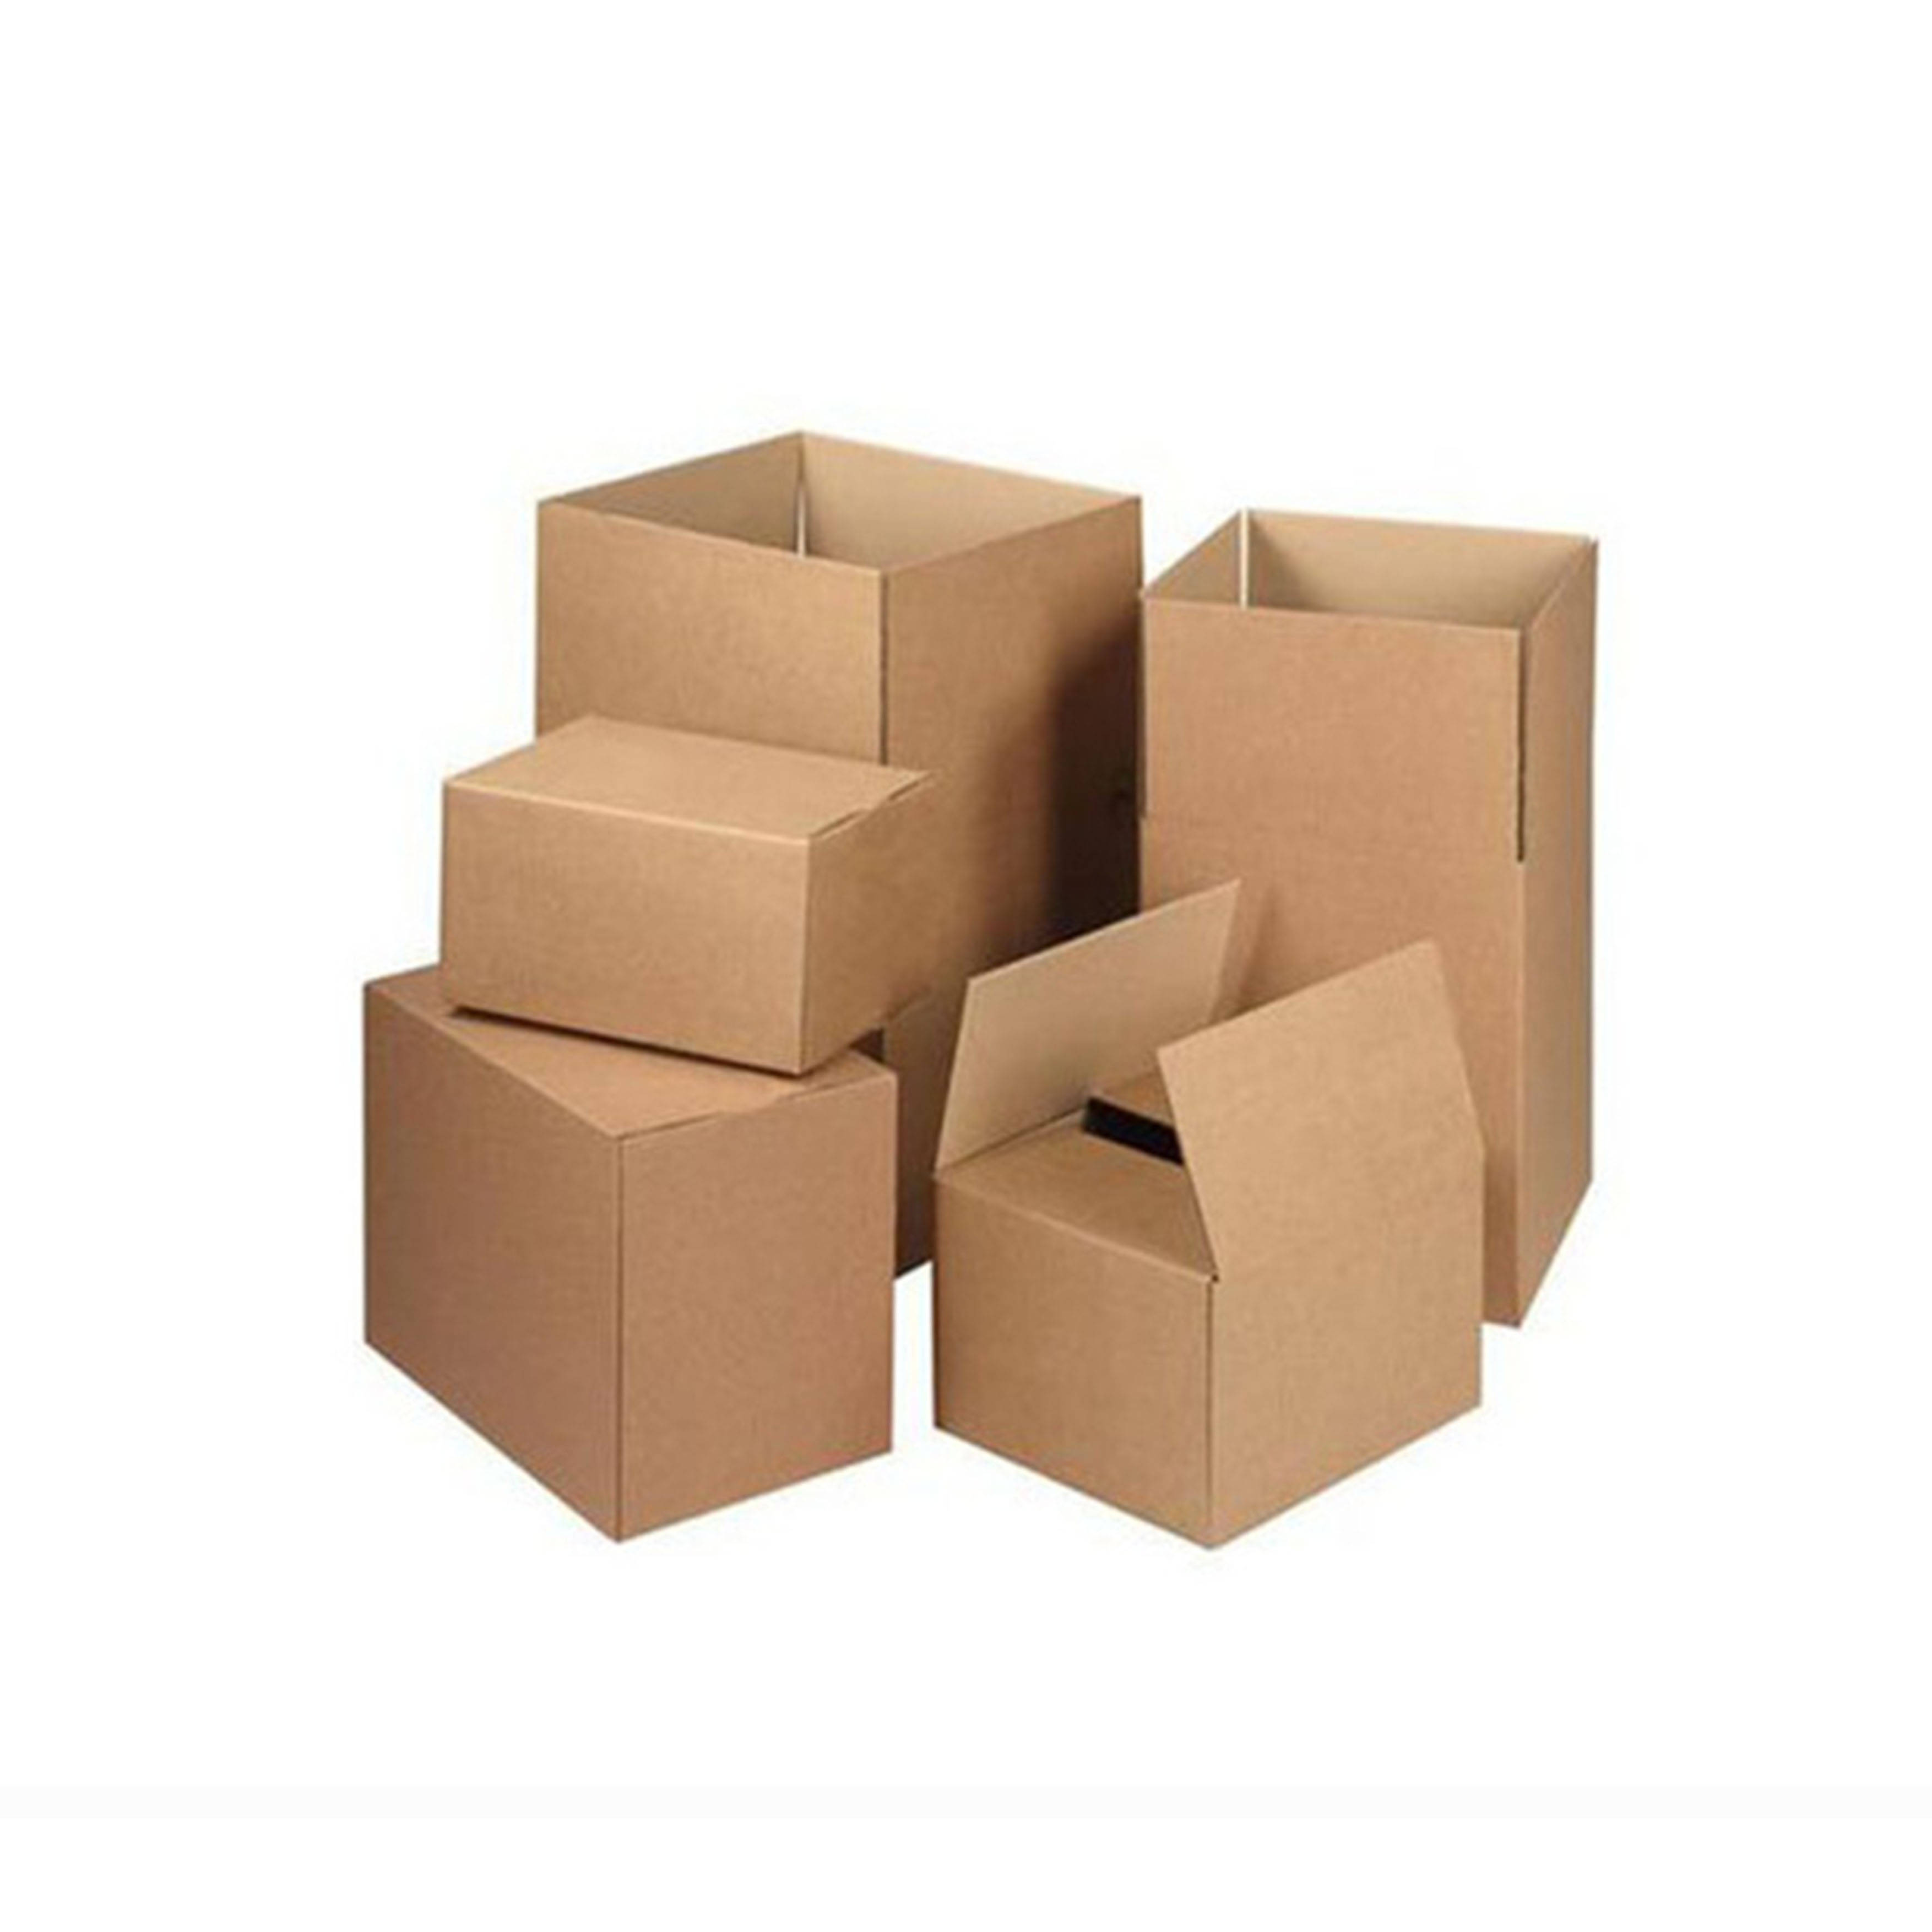 斯普乐科技带您详细了解工业包装之——瓦楞纸箱(下)